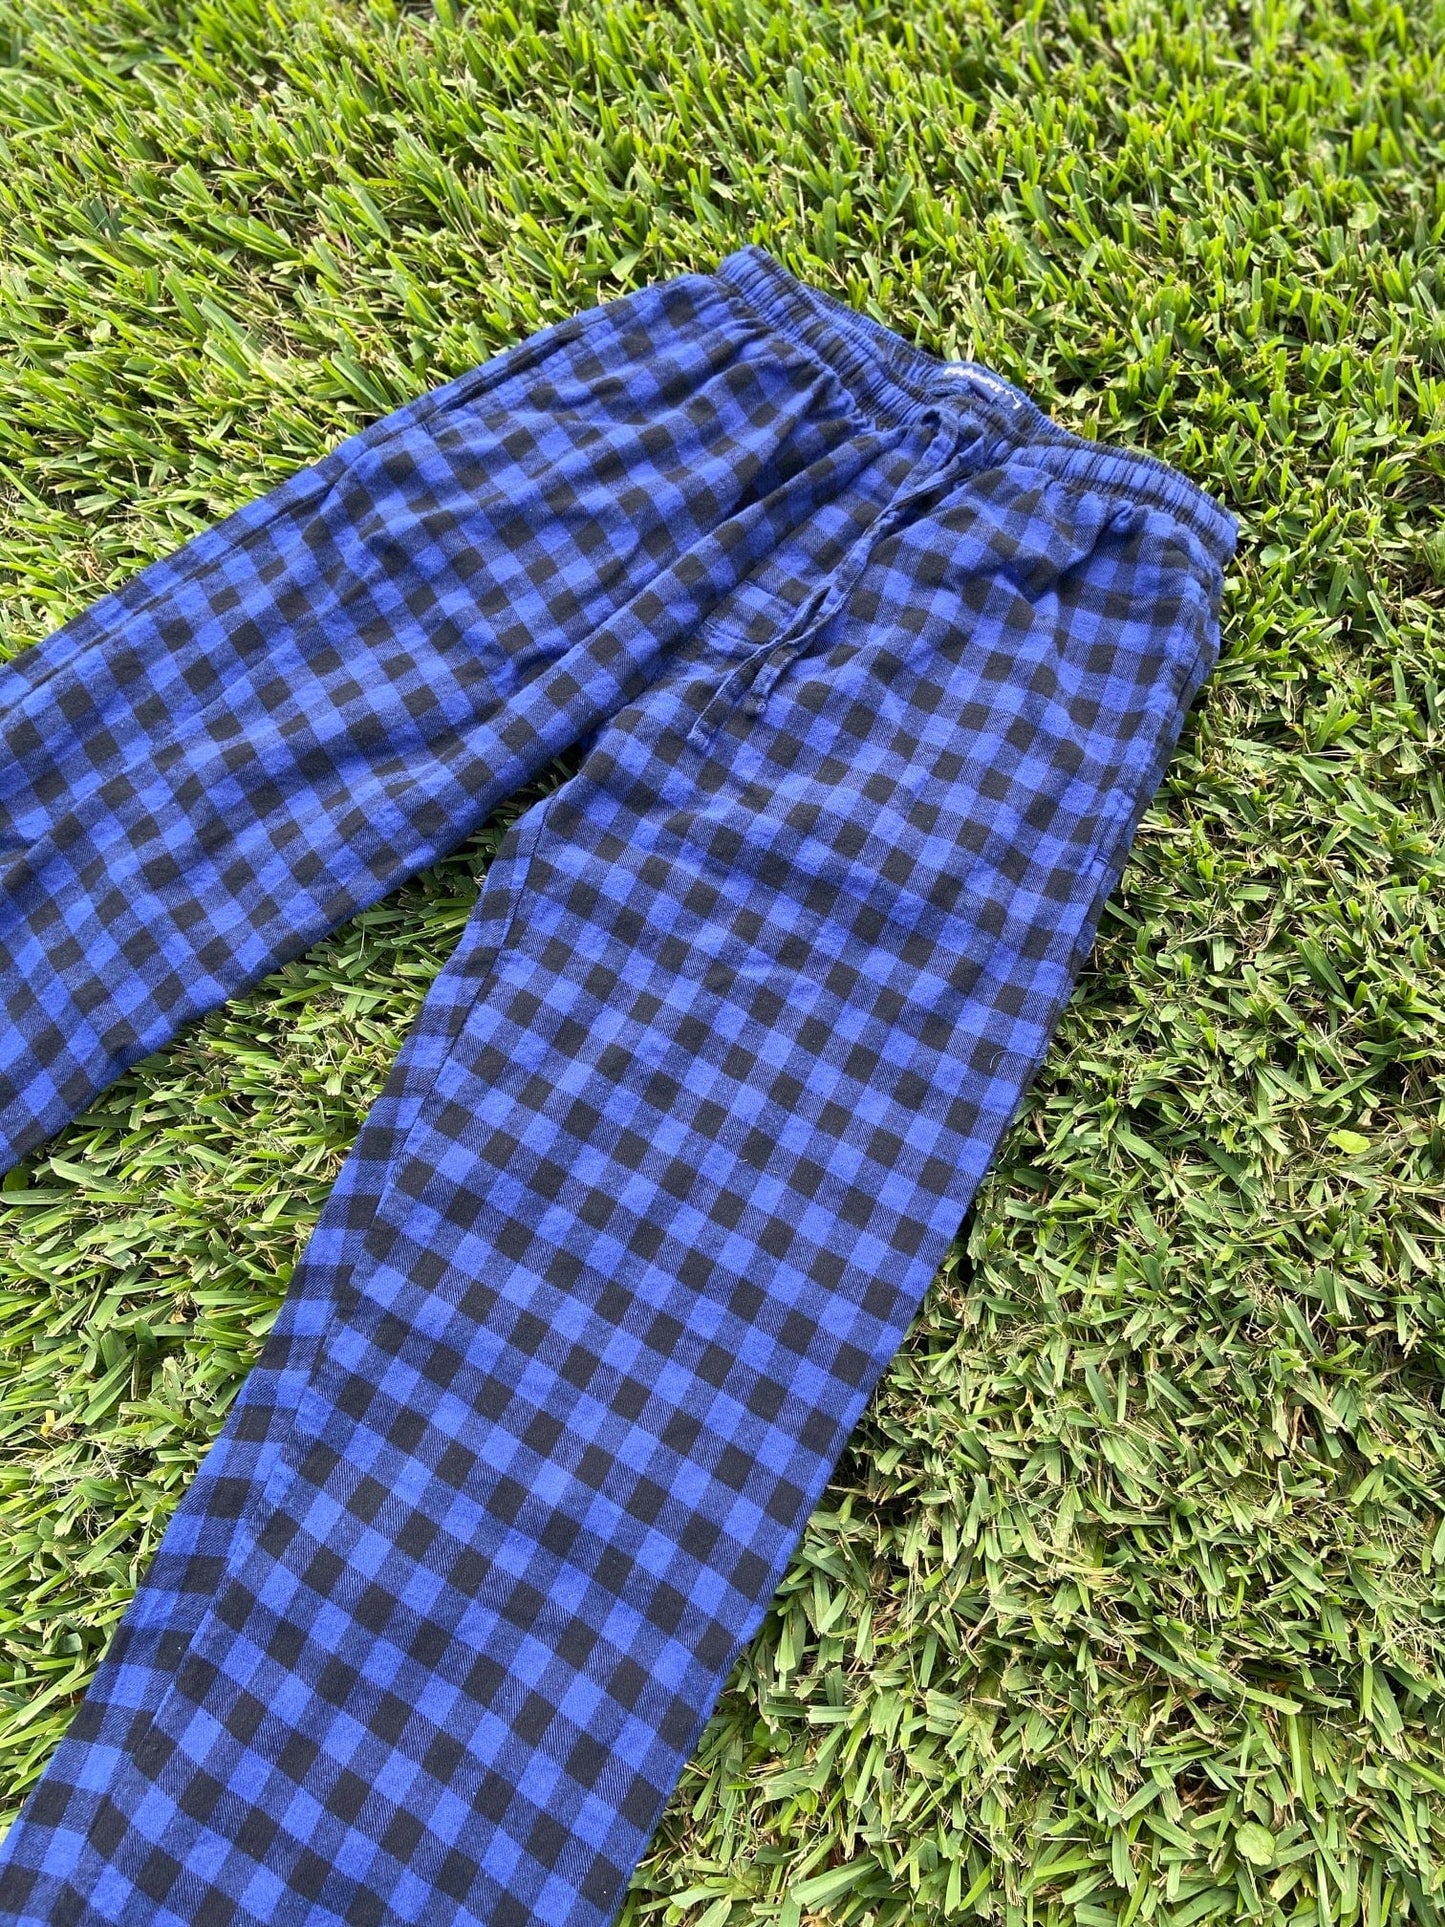 FORtheFIT womens-petite-pajamas Ladies' Petite Pajama Bottom - Flannel, Buffalo Plaid (Blue/Black)